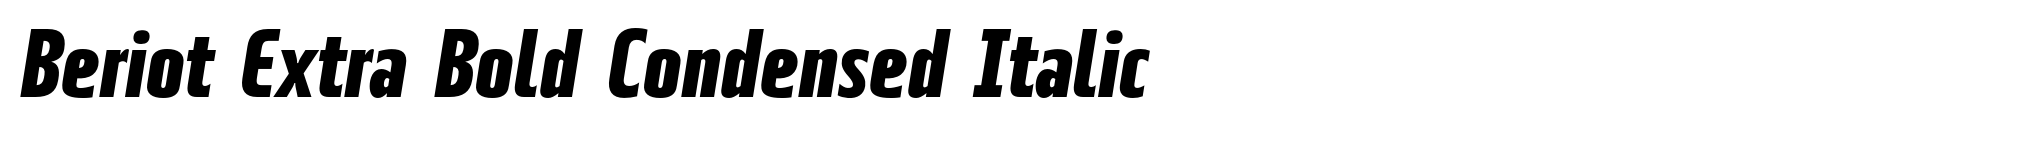 Beriot Extra Bold Condensed Italic image